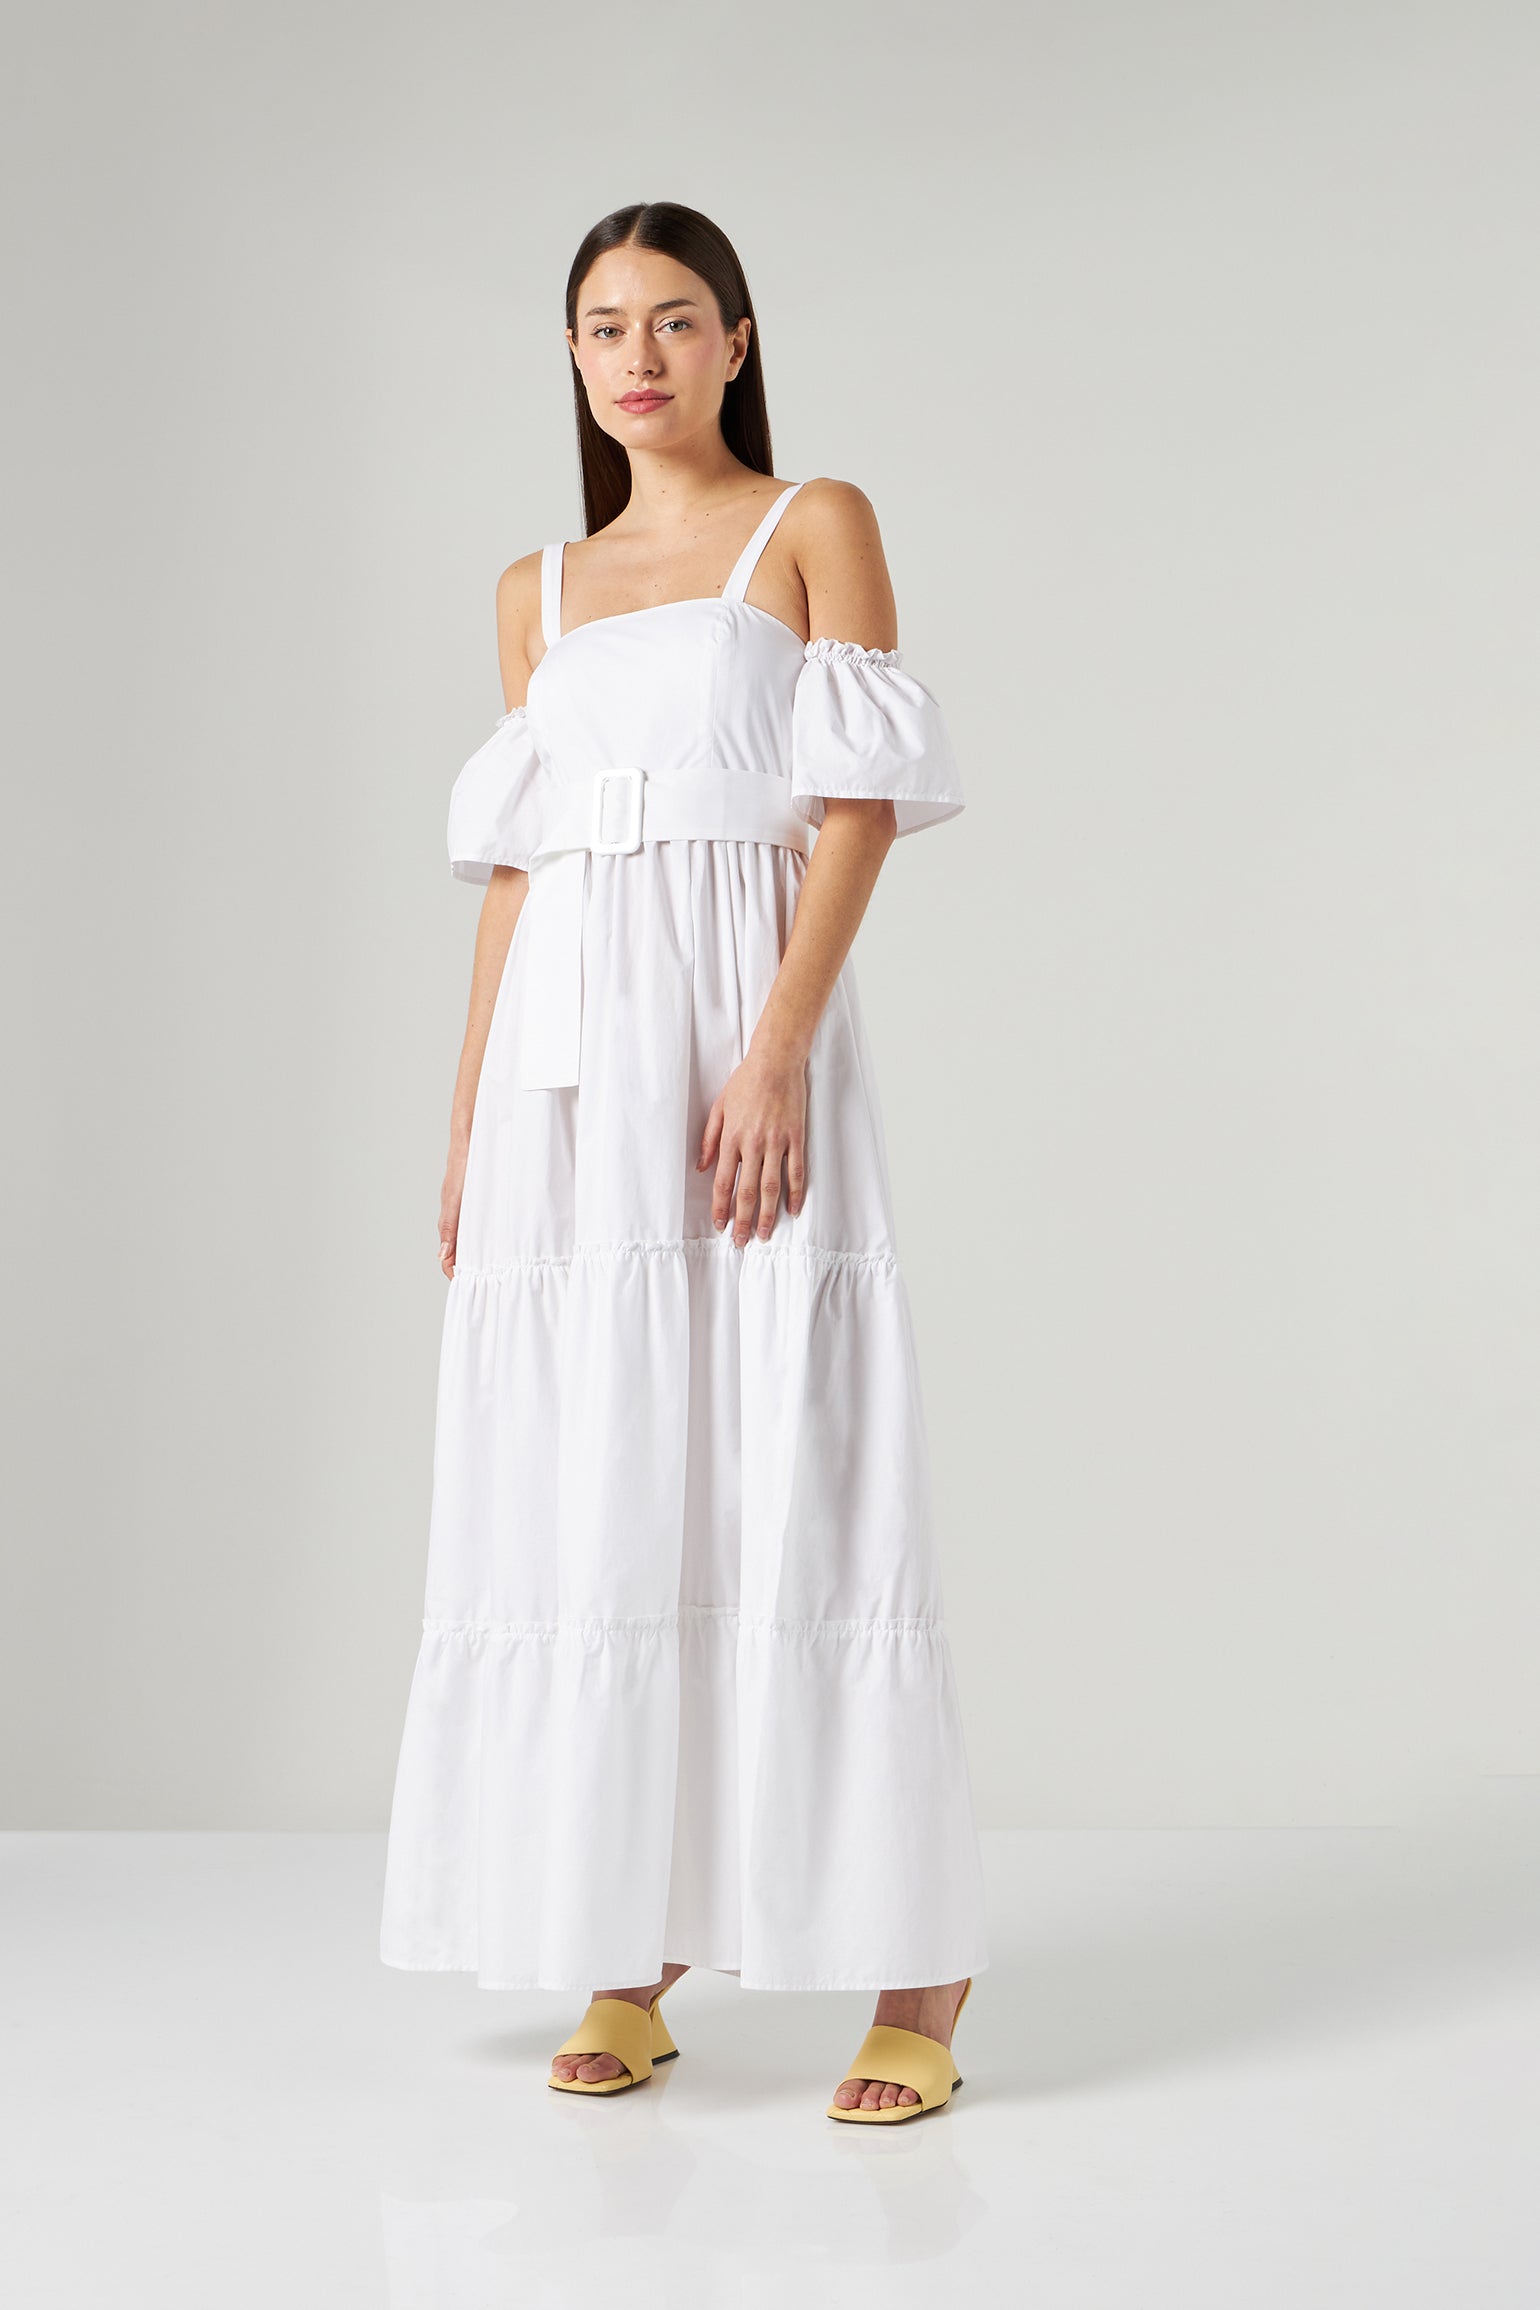 LIU JO Long White Dress